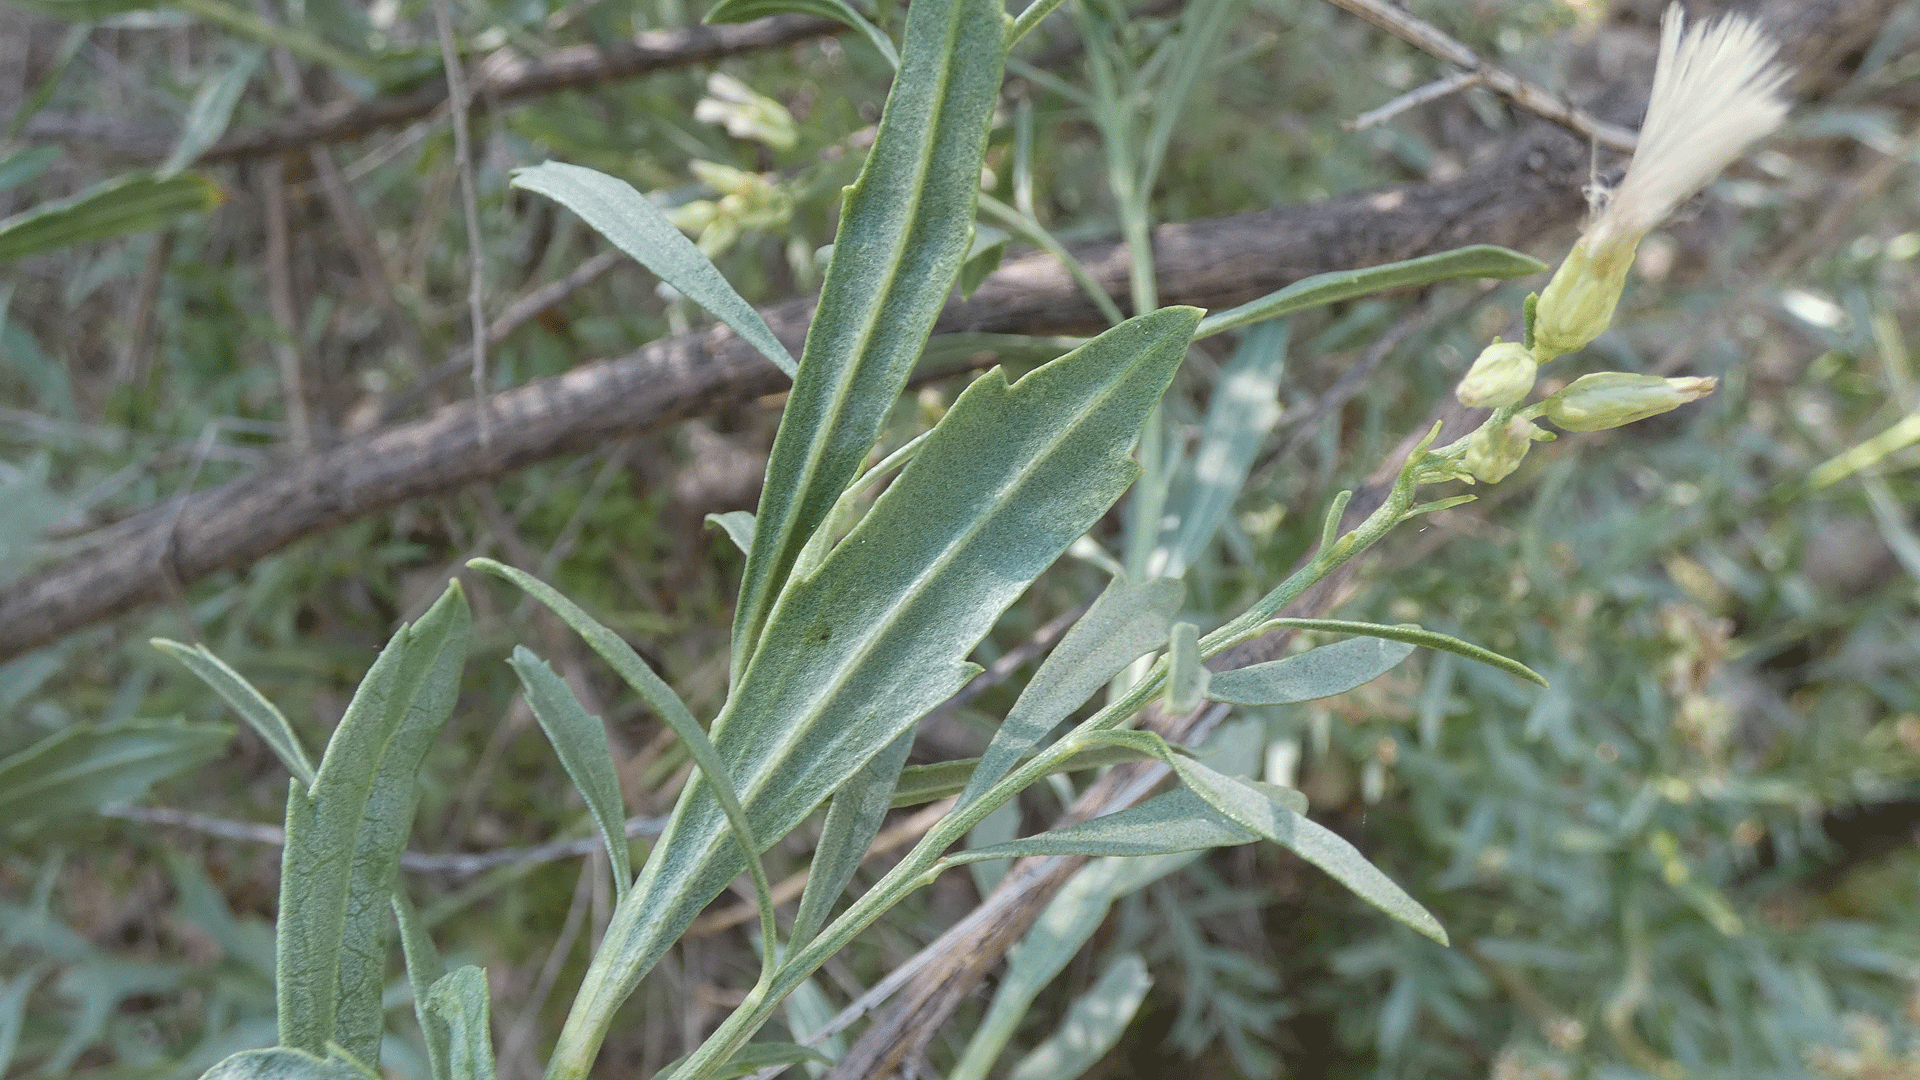 Leaves, Rio Grande Bosque, Albuquerque, August 2020